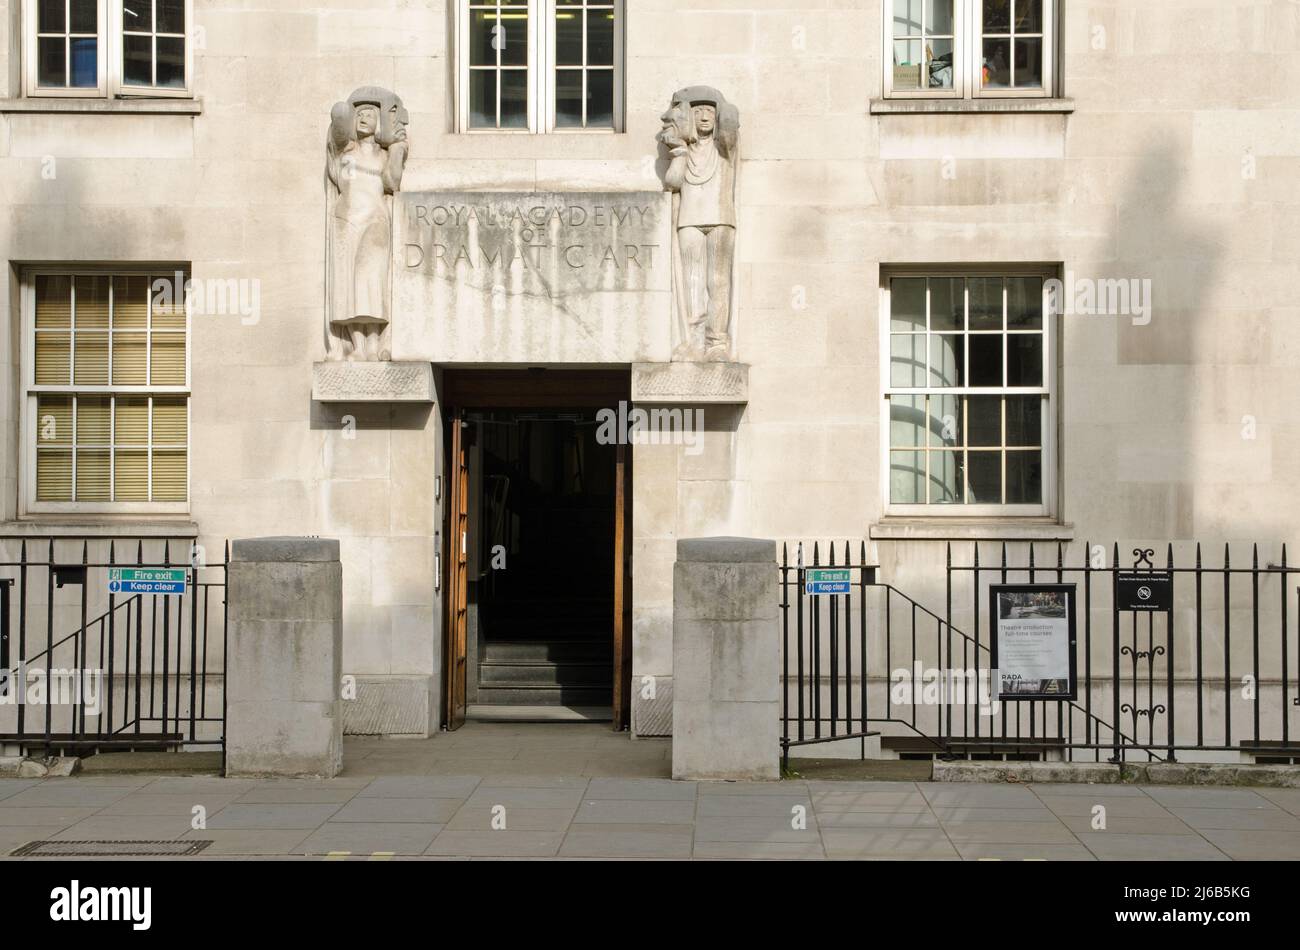 Londres, Reino Unido - 21 de marzo de 2022: Entrada principal a la Real Academia de Arte Dramático - RADA - en Gower Street, Camden, Londres central. Una escultura sobre el Foto de stock